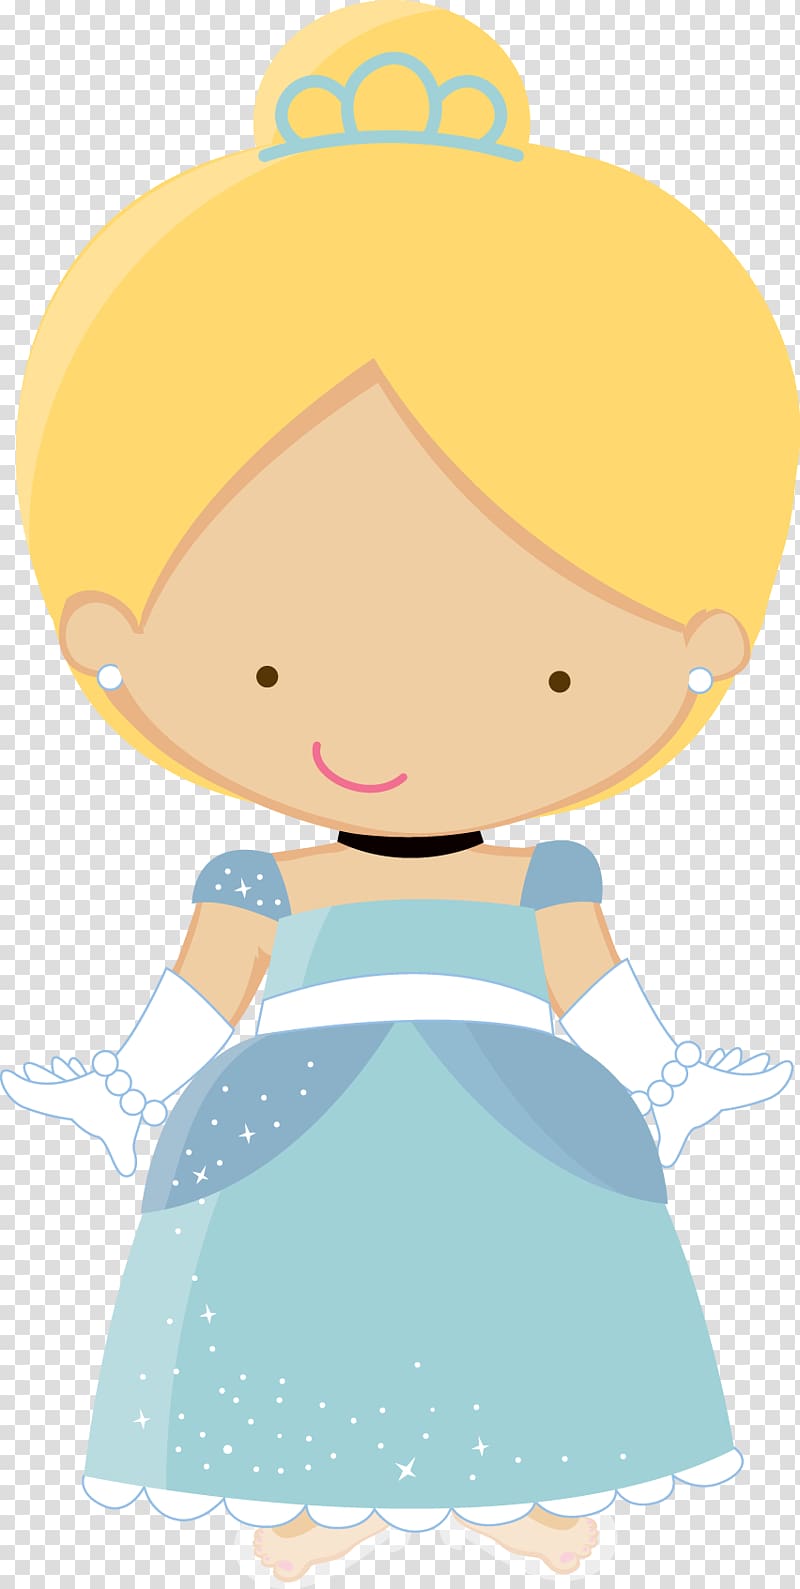 Cinderella Rapunzel Disney Princess, castle princess transparent background  PNG clipart | HiClipart